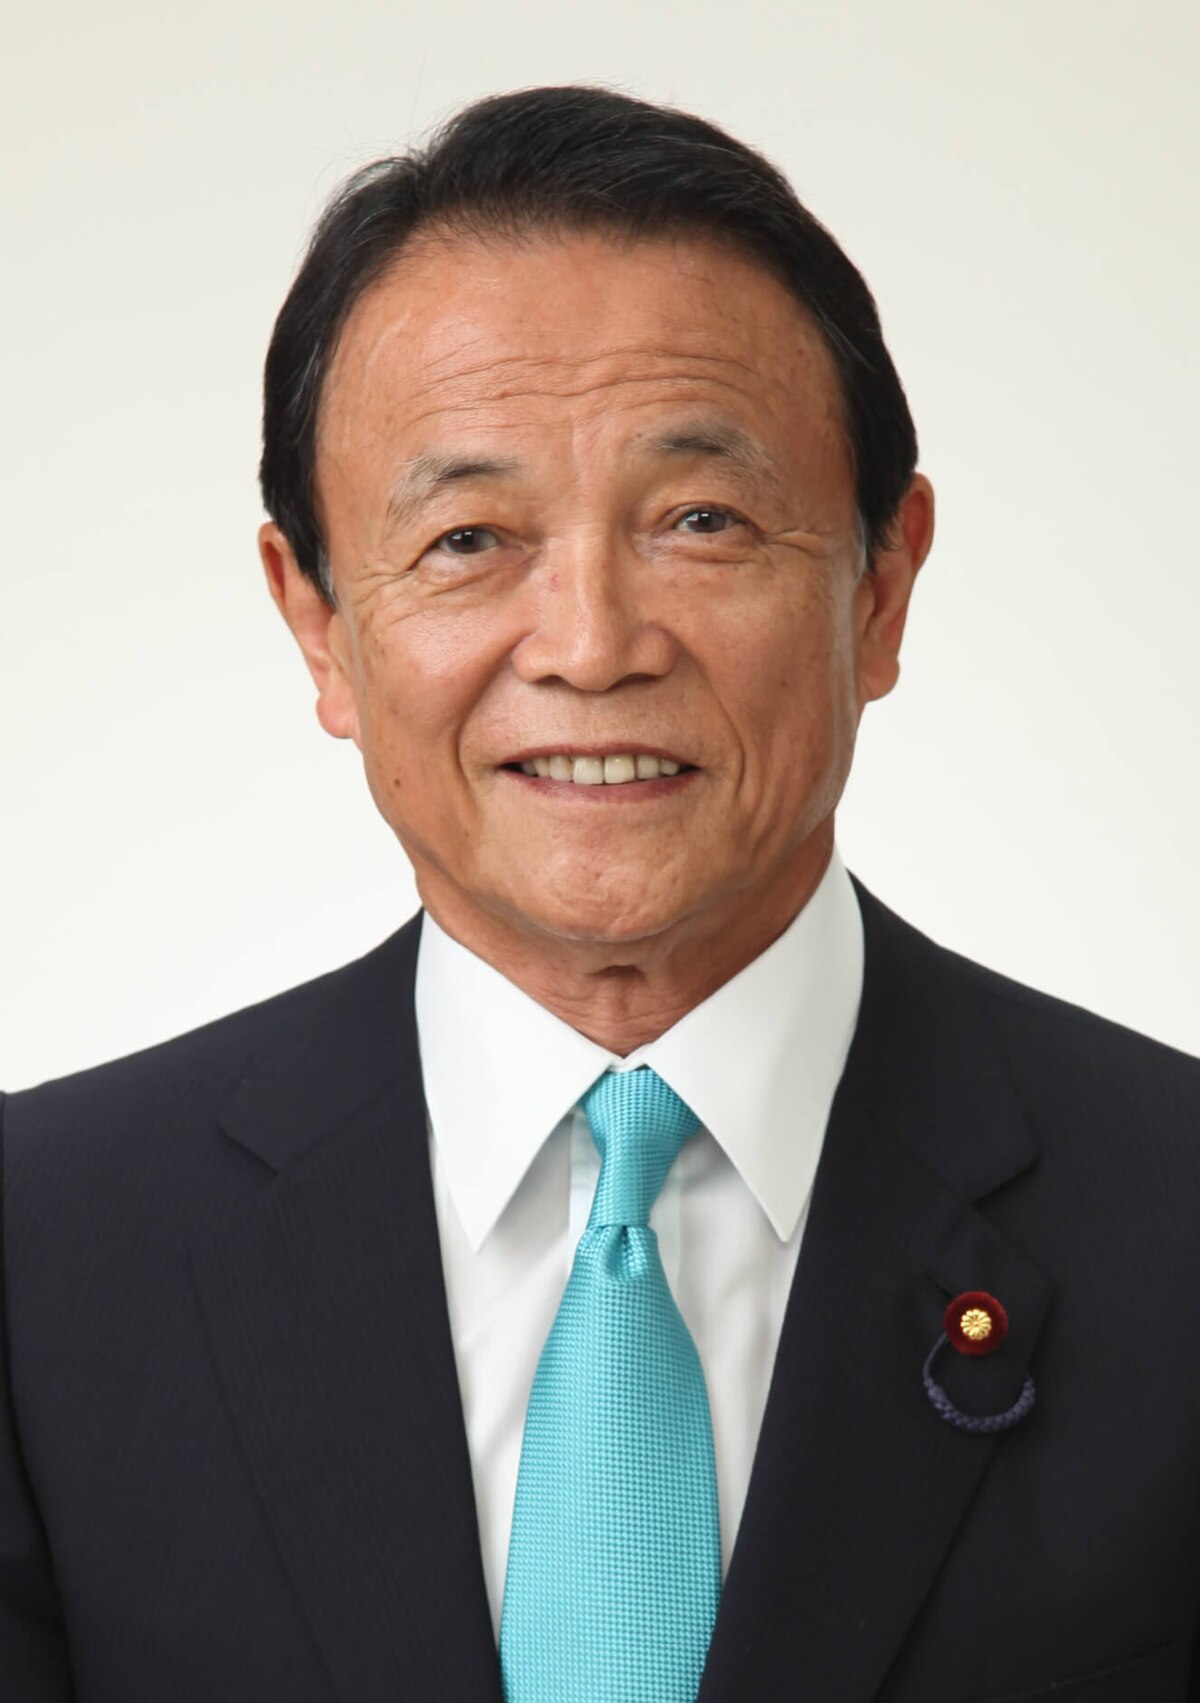 麻生太郎 - Wikipedia